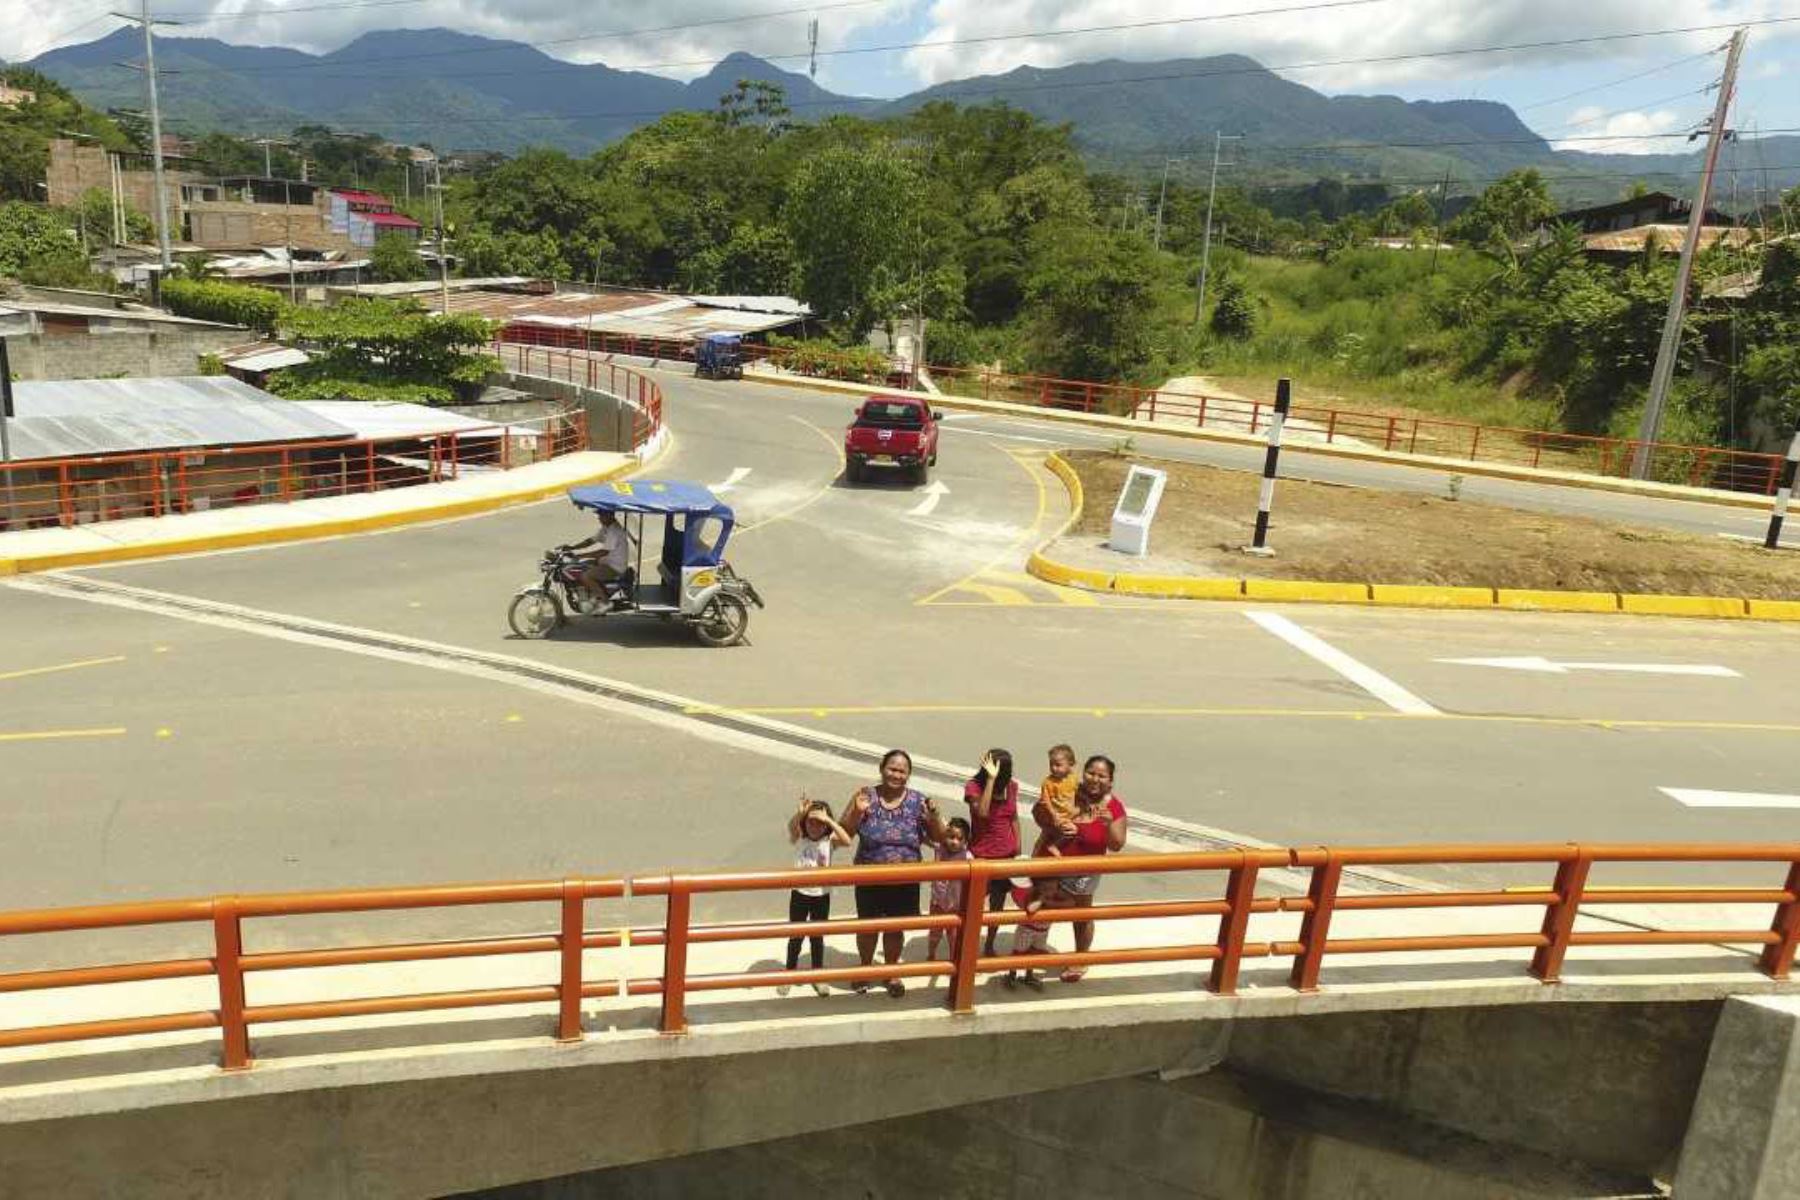 El ministro de Vivienda, Construcción y Saneamiento, Javier Piqué, inauguró hoy el nuevo puente vehicular Maukallacta, ubicado sobre el río Shilcayo, que descongestionará el tráfico vehicular y mejorará la accesibilidad entre los distritos de Tarapoto y La Banda de Shilcayo, en beneficio de más de 149,000 vecinos de la zona.